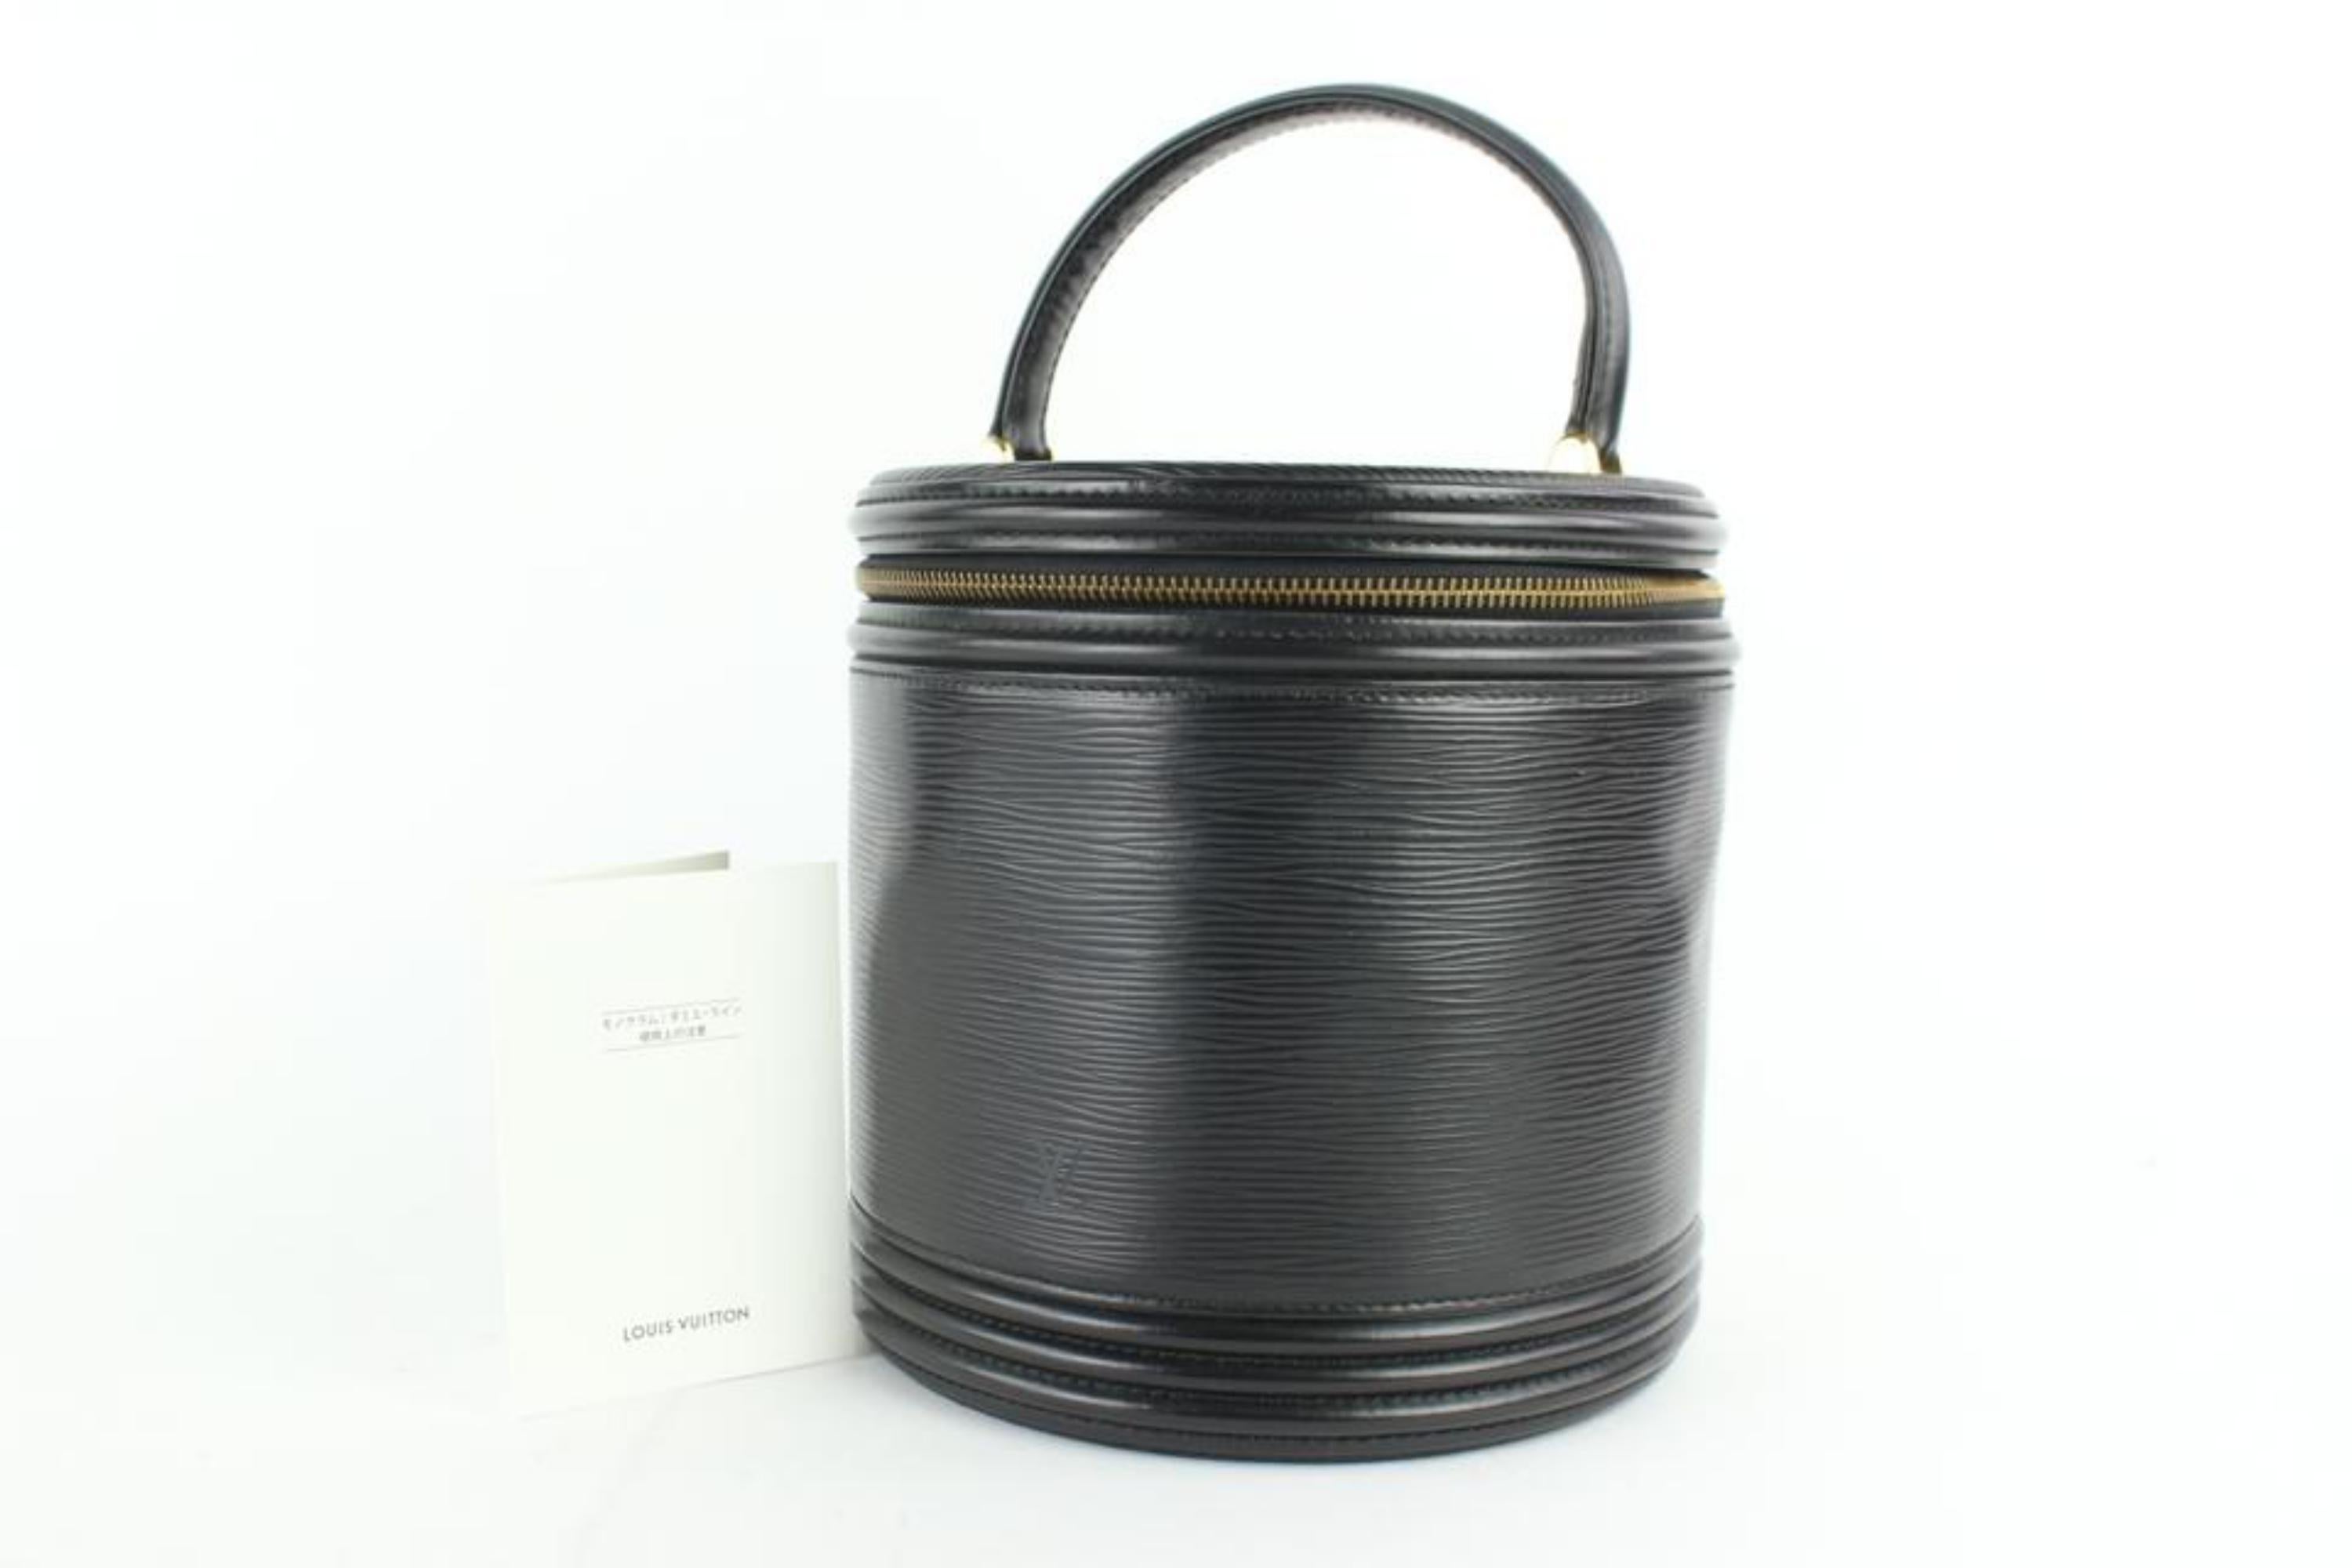 Louis Vuitton Cannes Noir Vanity Tote Case 27lz0129 Black Leather Satchel For Sale 6